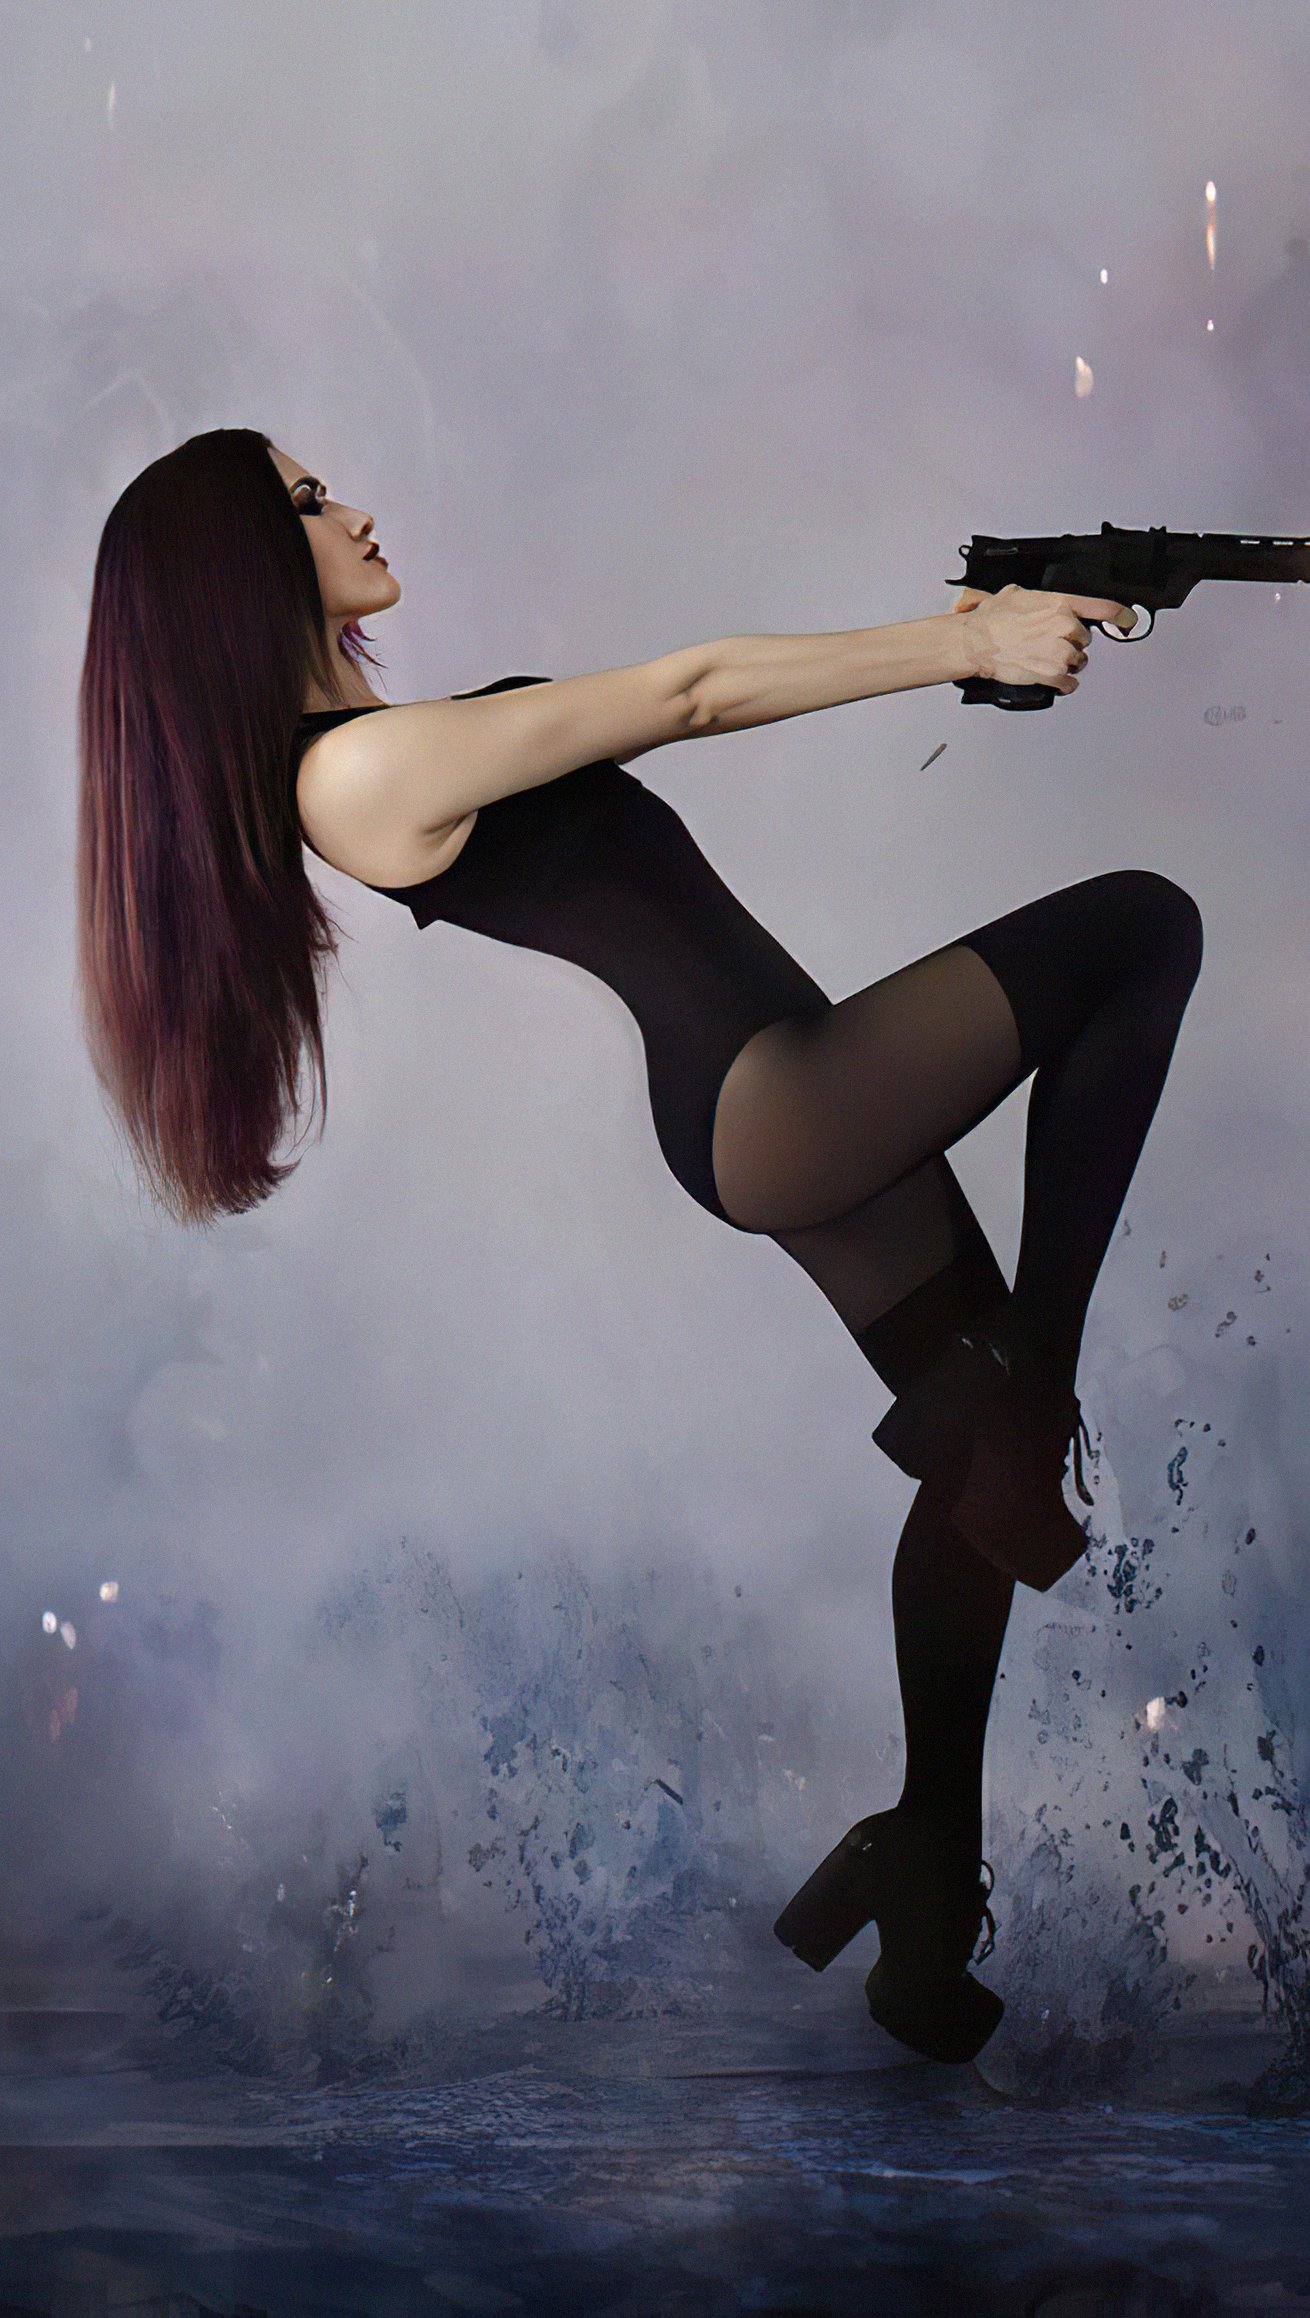 Wallpaper Girl with a gun Vertical